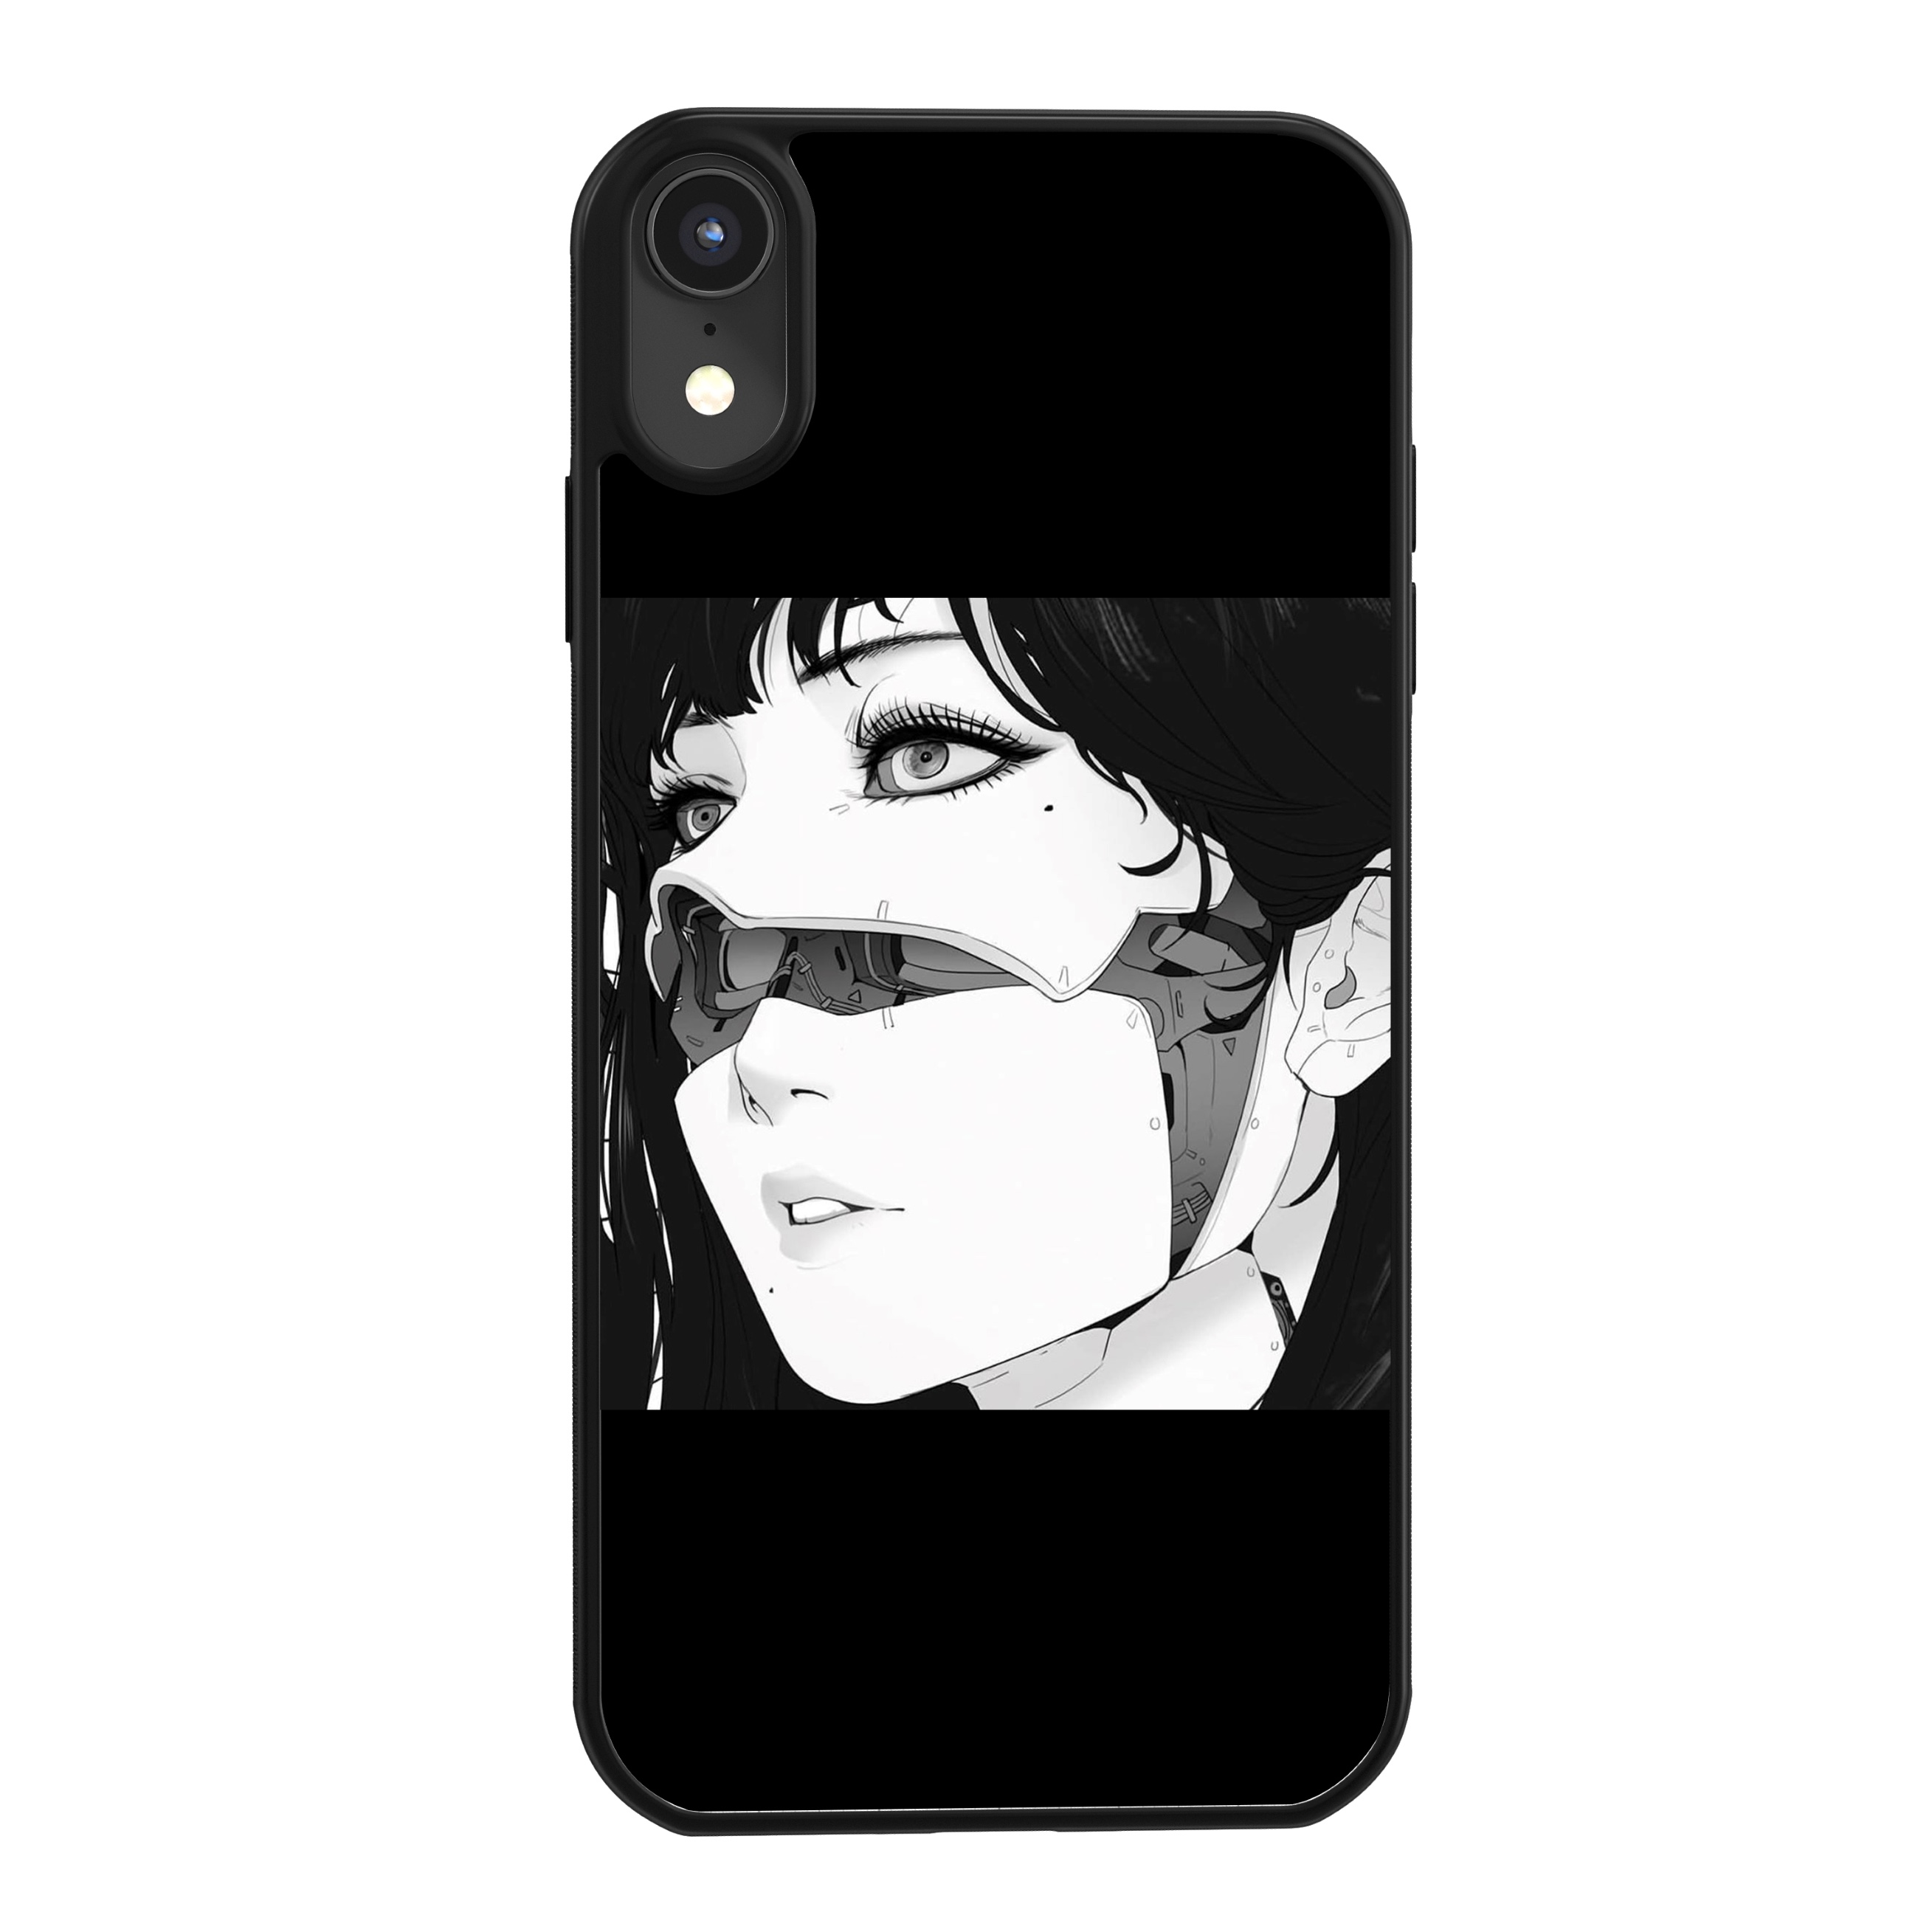 スチームパンク イラスト女子iPhone 12 Pro Max/12 miniケース黒いアイフォン12 Pro/12/11 Pro携帯カバー黒色